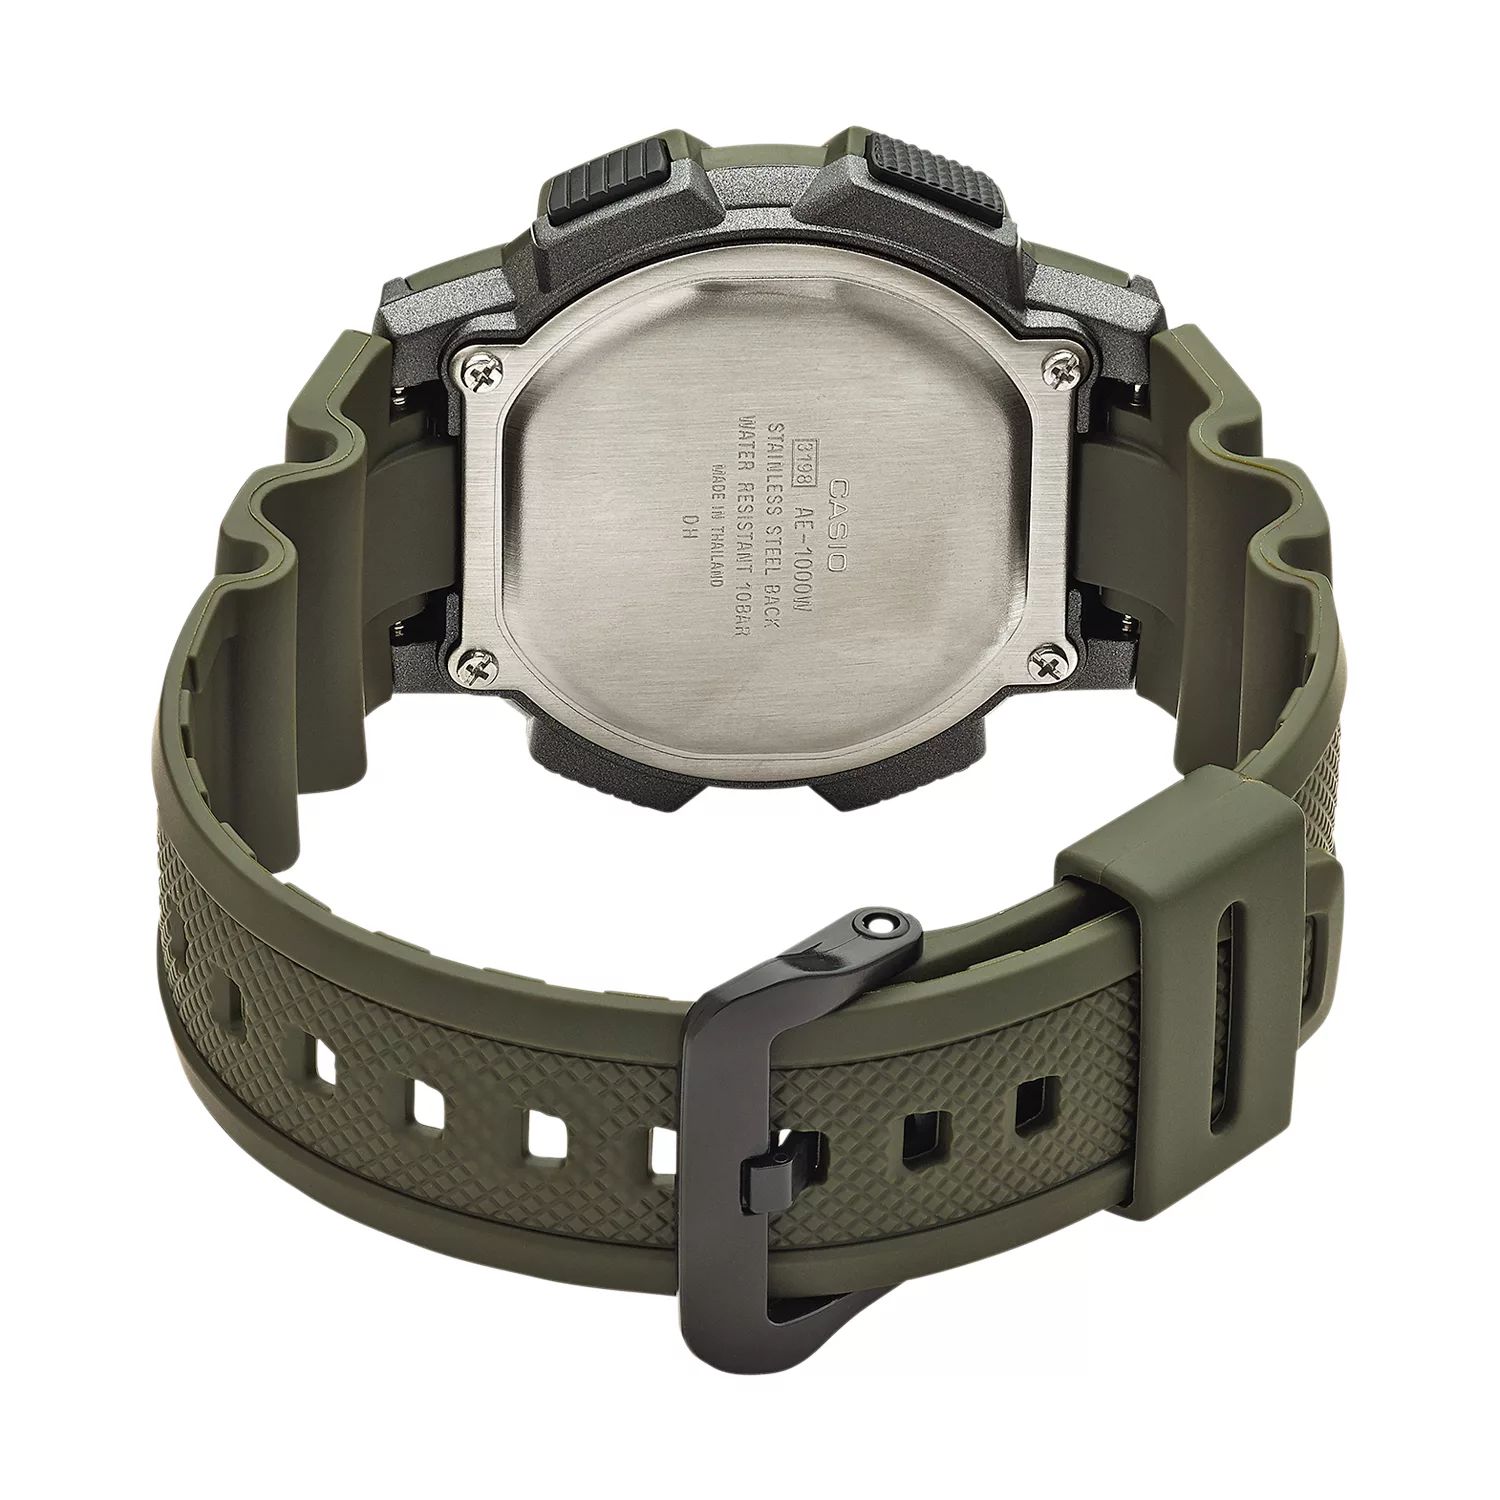 Мужские часы с цифровым хронографом мирового времени — AE1000W-3AVCF Casio цена и фото